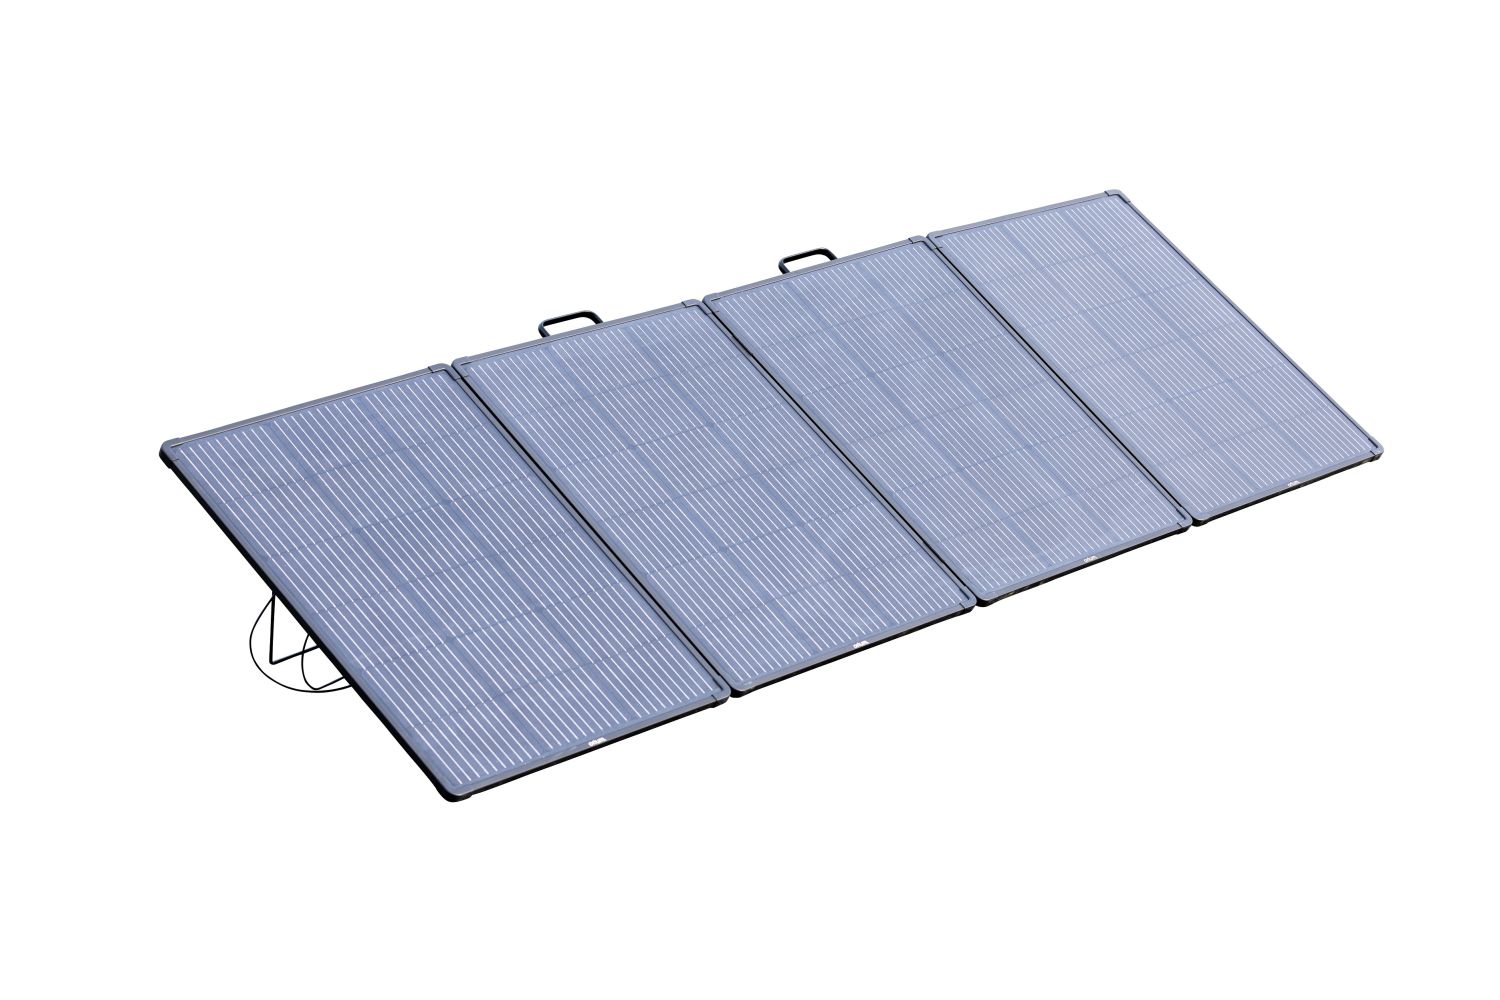 Kit solaire photovoltaique autonome avec panneau 200W 12V